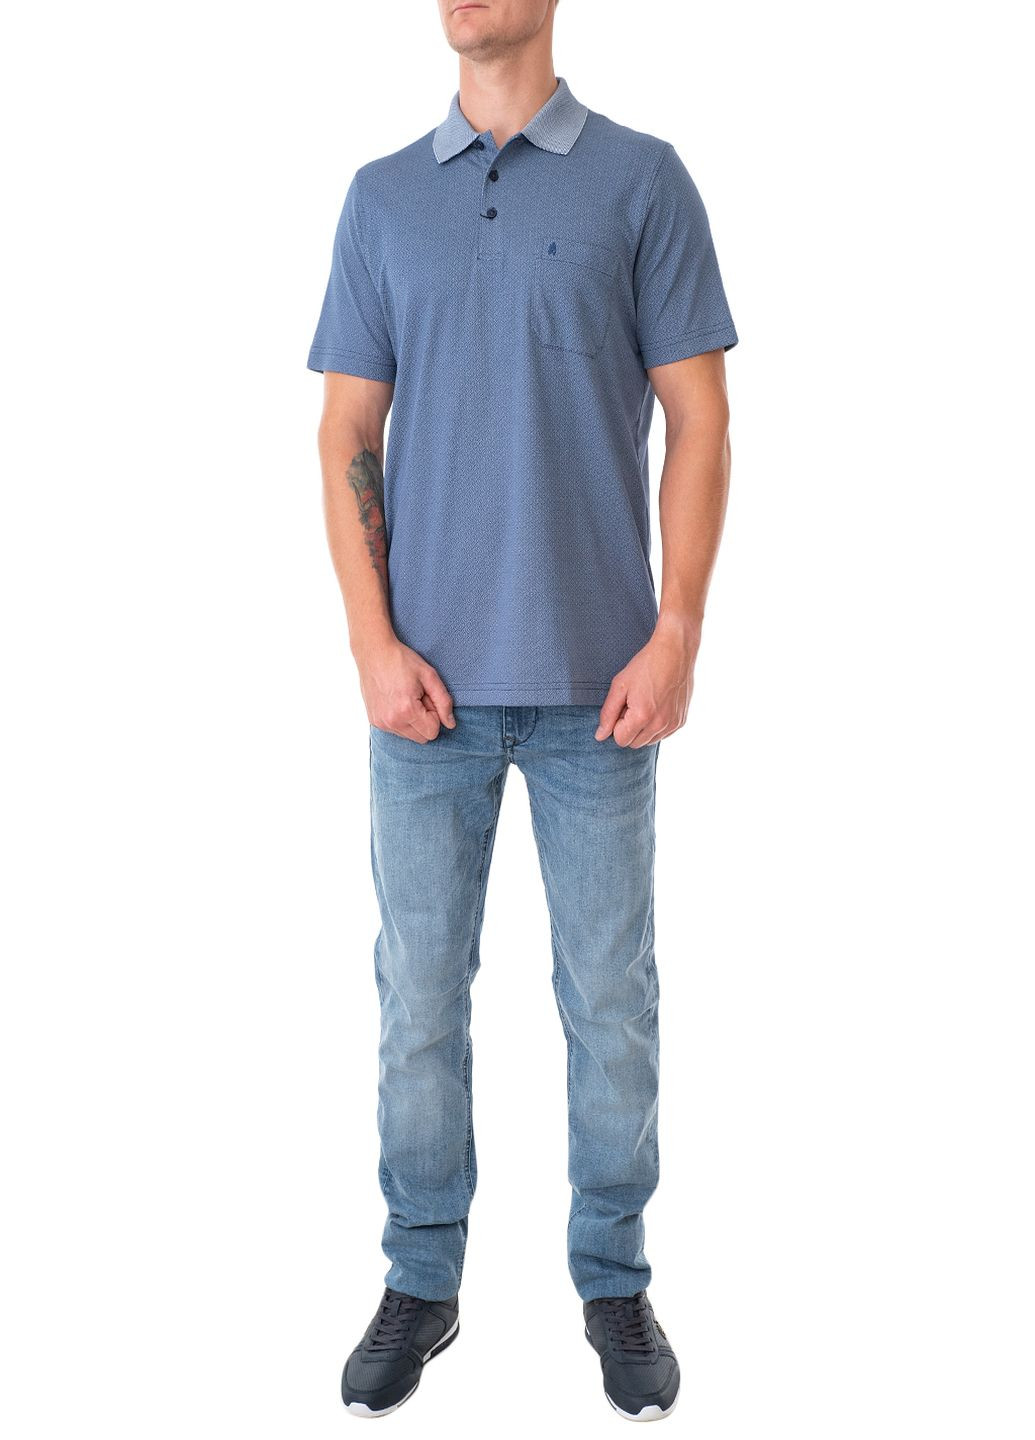 Синяя футболка-поло для мужчин Ragman с геометрическим узором